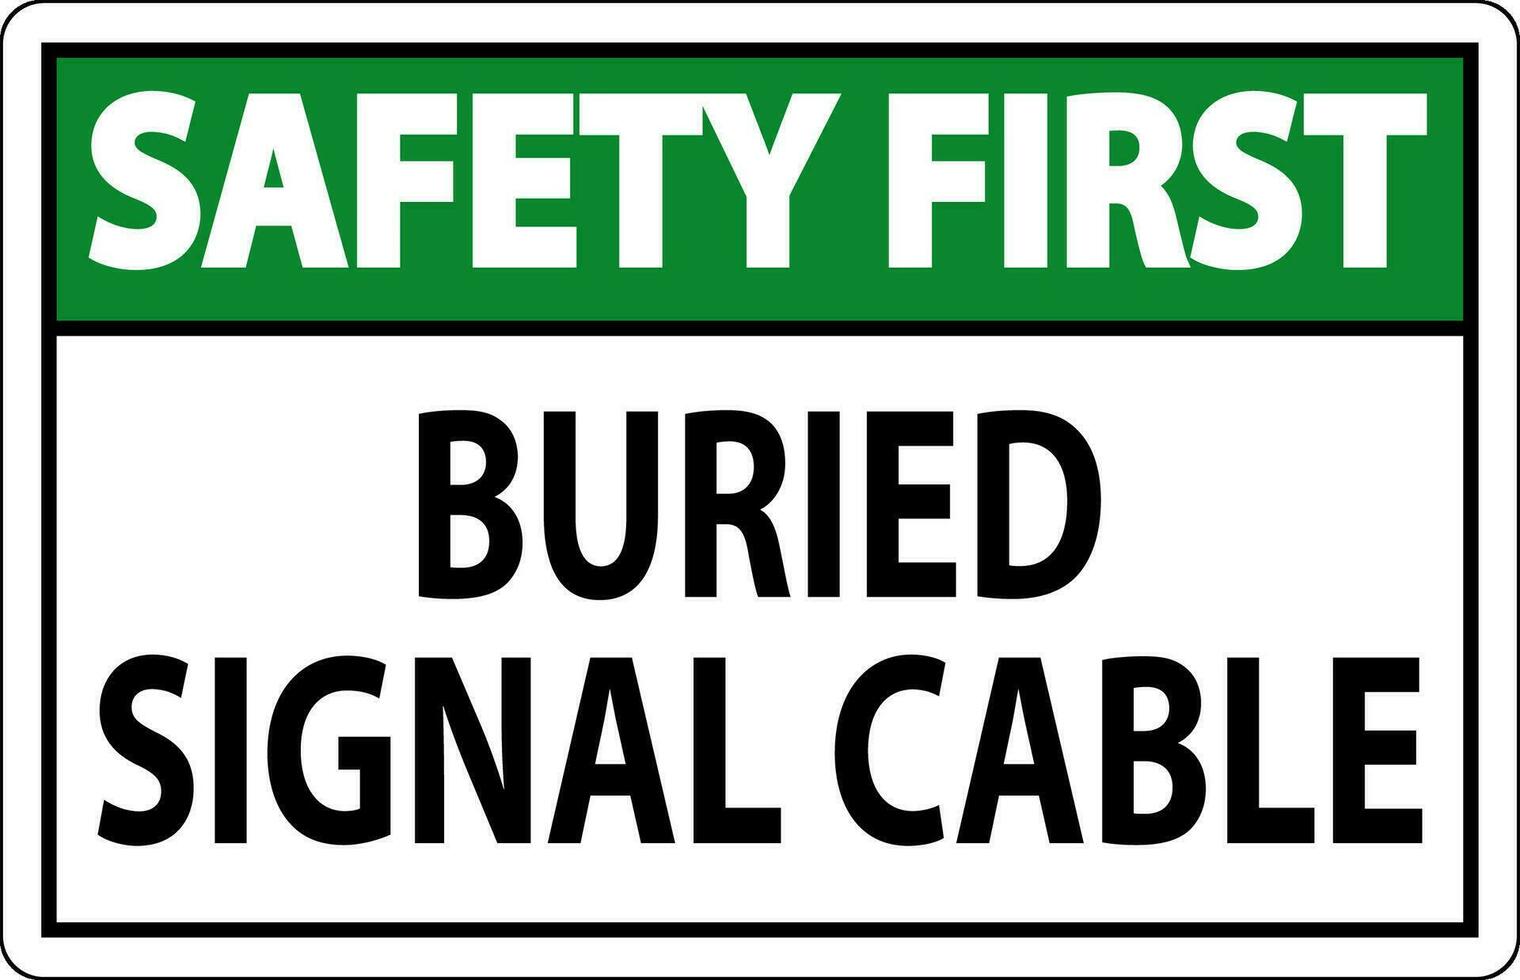 la seguridad primero firmar enterrado señal cable en blanco fundamento vector